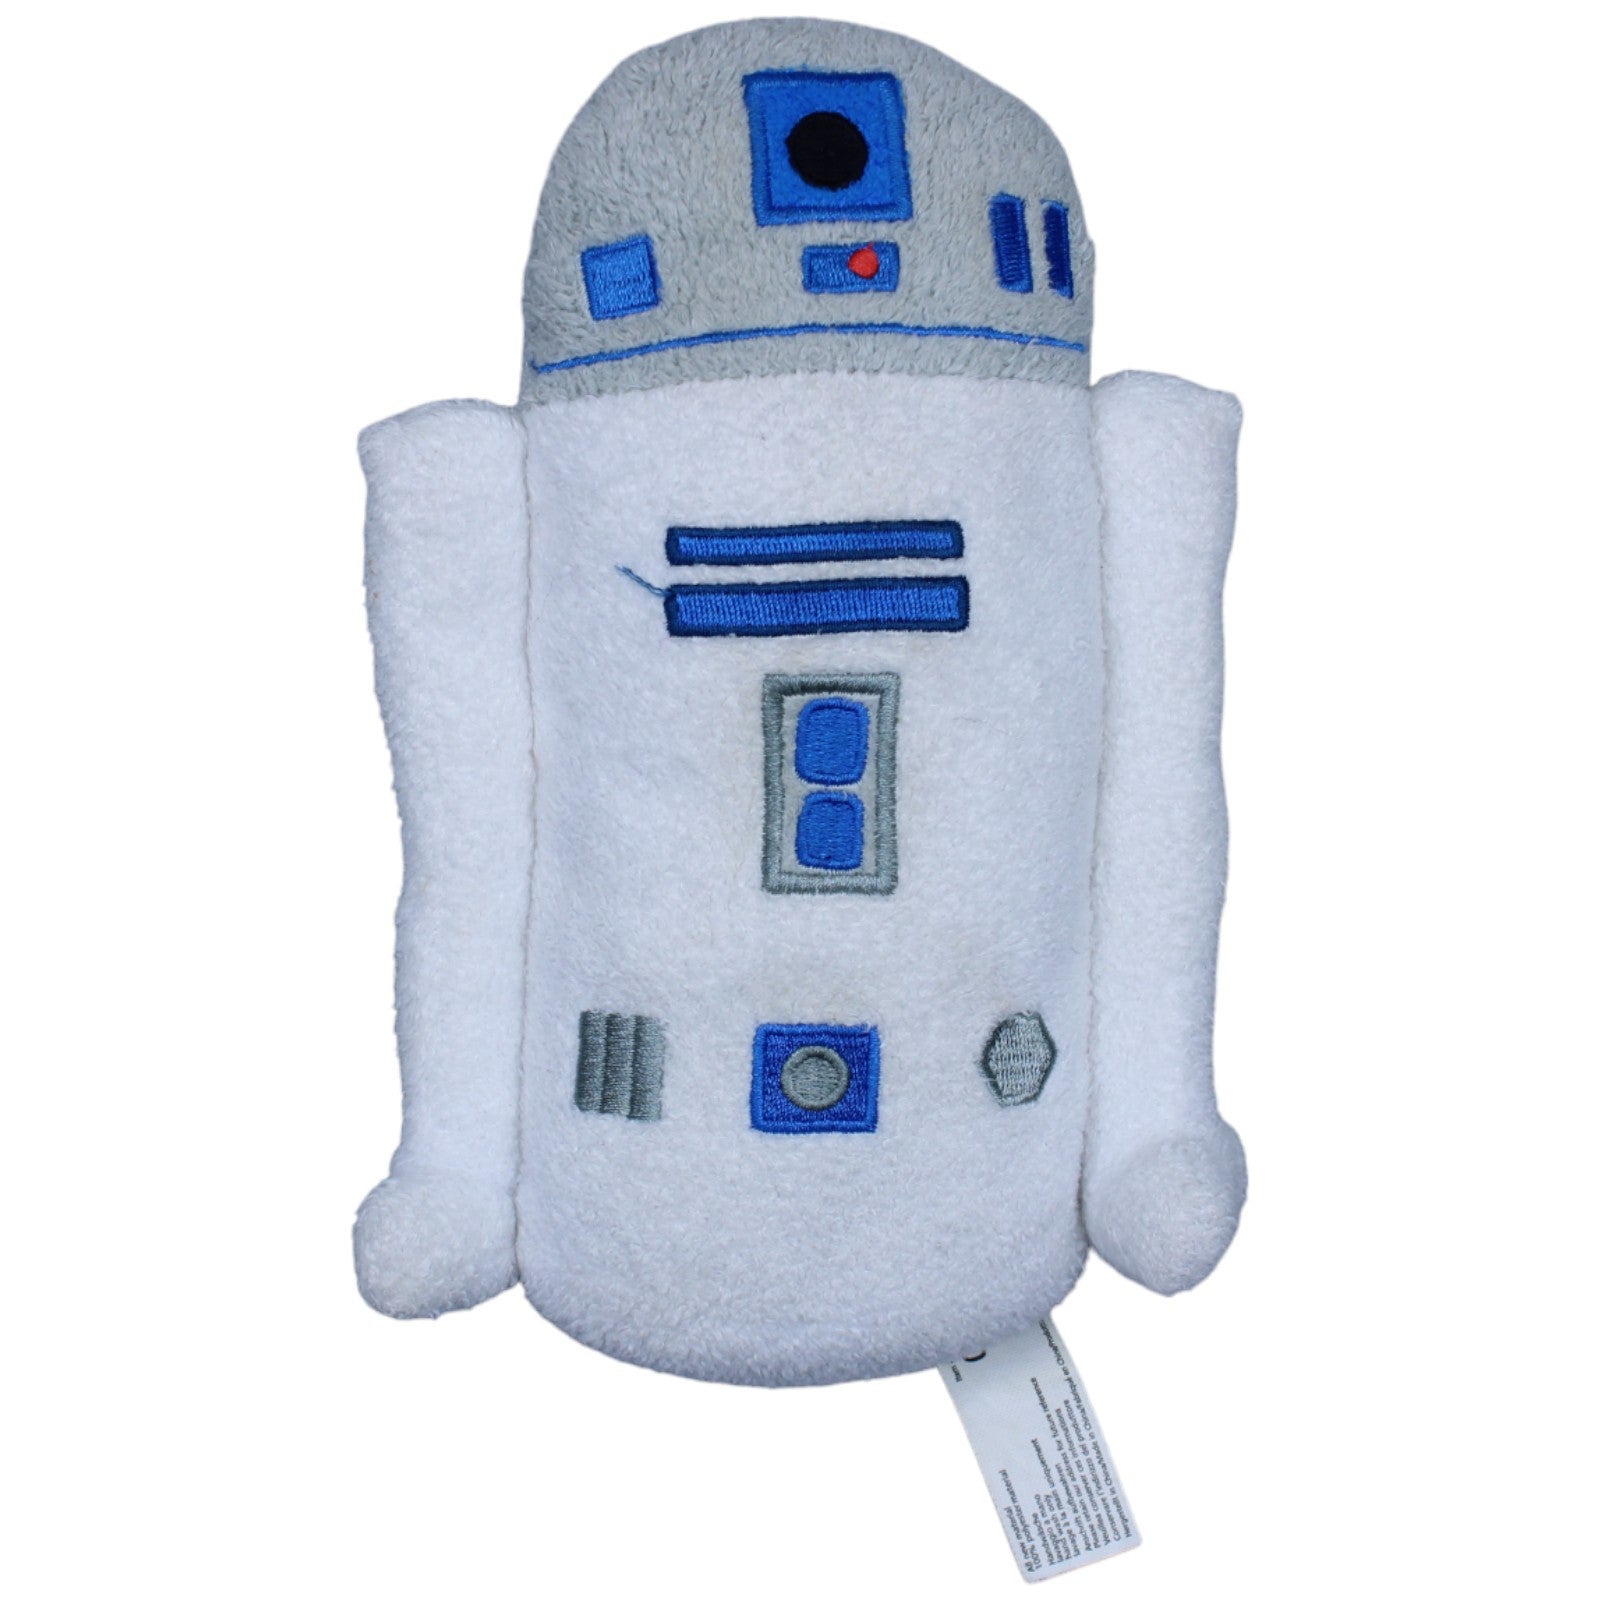 Lucasfilm, Droide R2-D2 aus Star Wars von Joy Toy